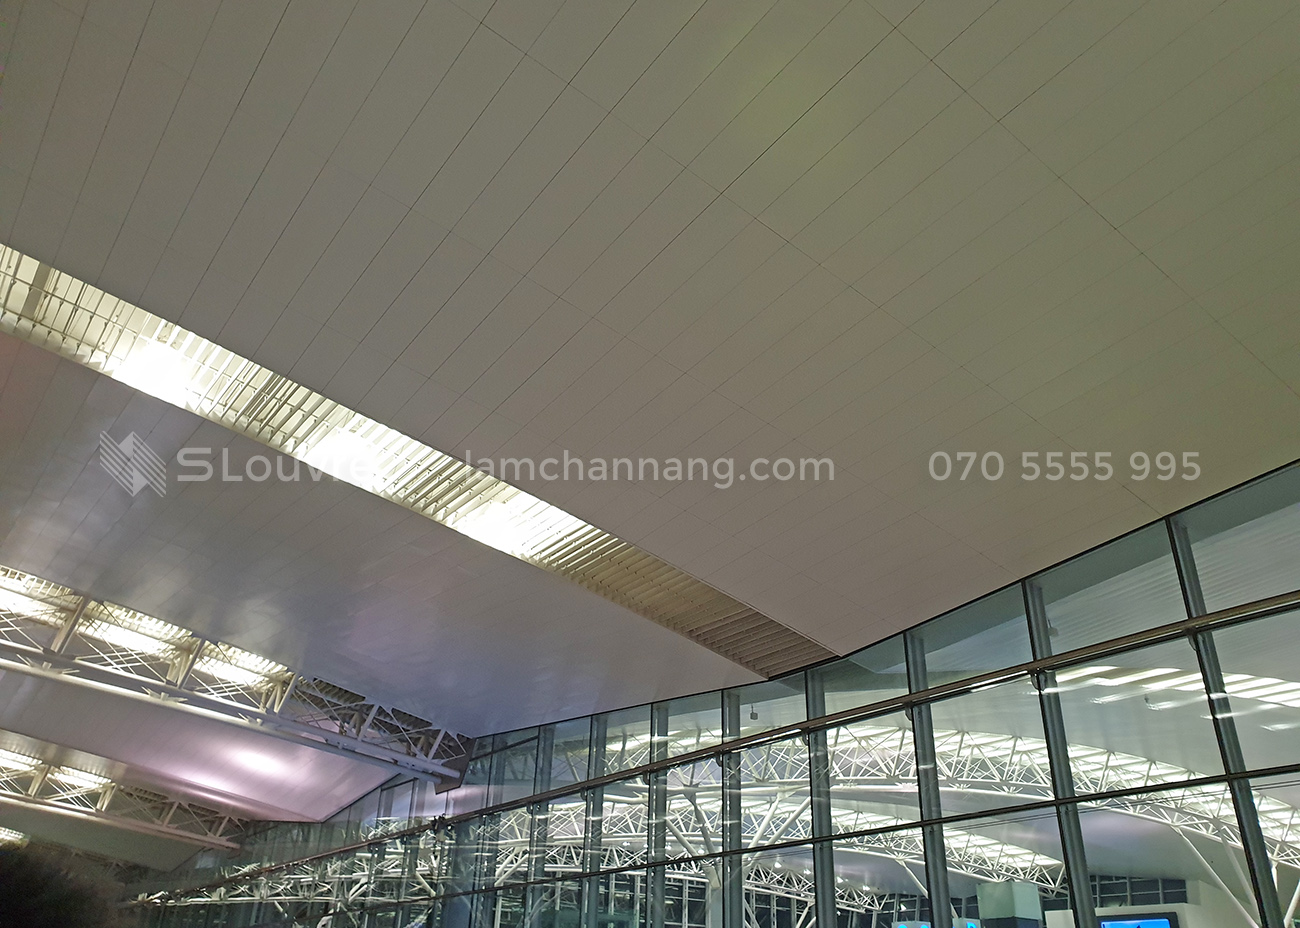 tran-nhom-san-bay-airport-aluminium-ceiling-9